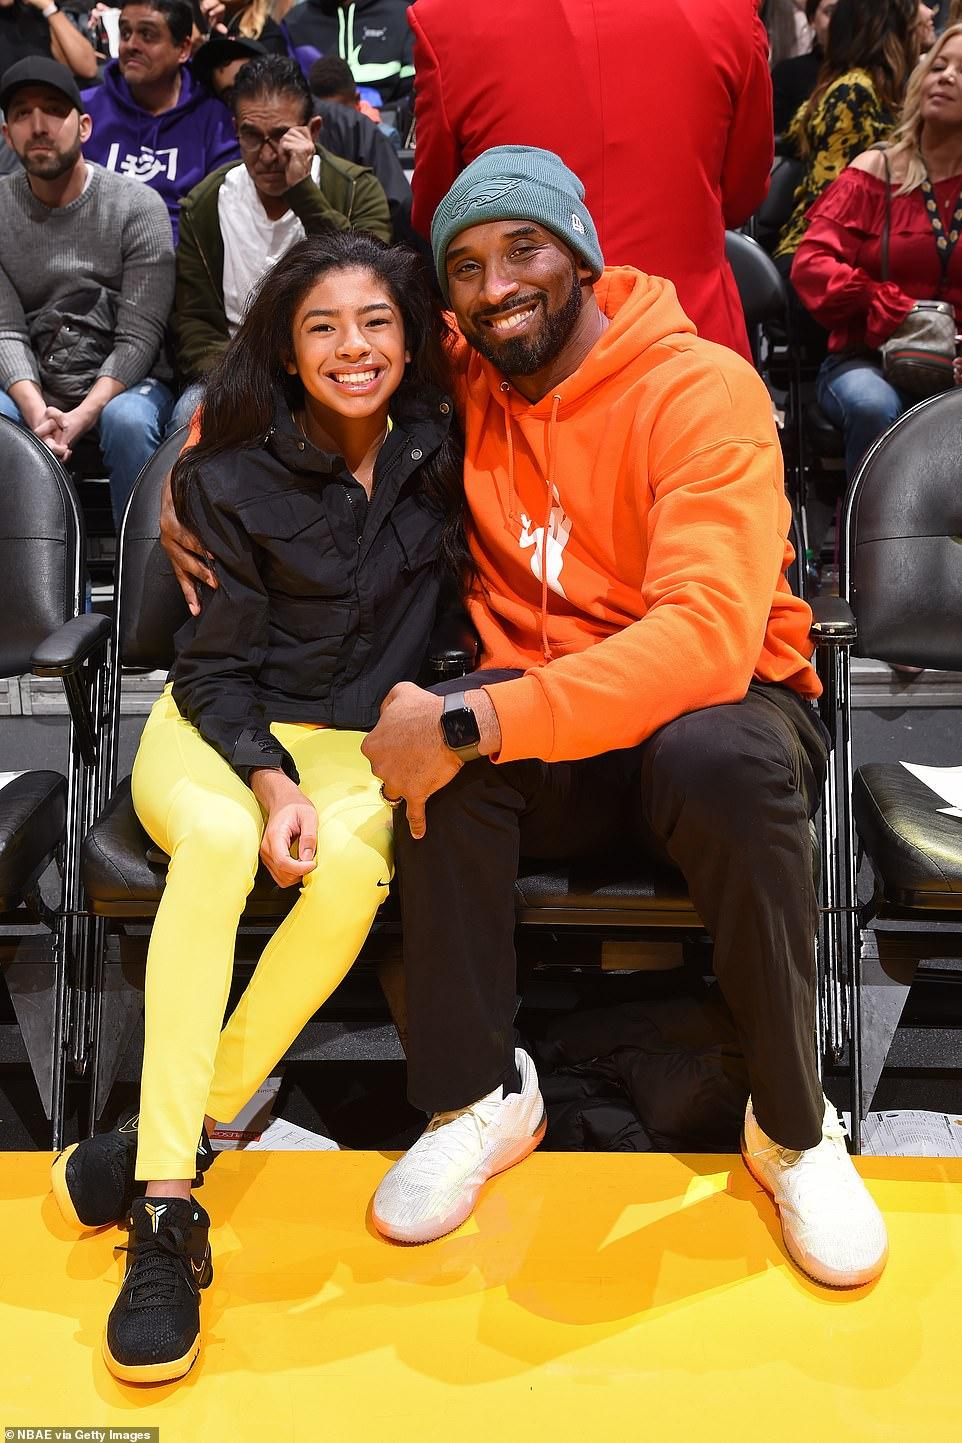 Kobe Bryant's daughter Gianna shows basketball skills